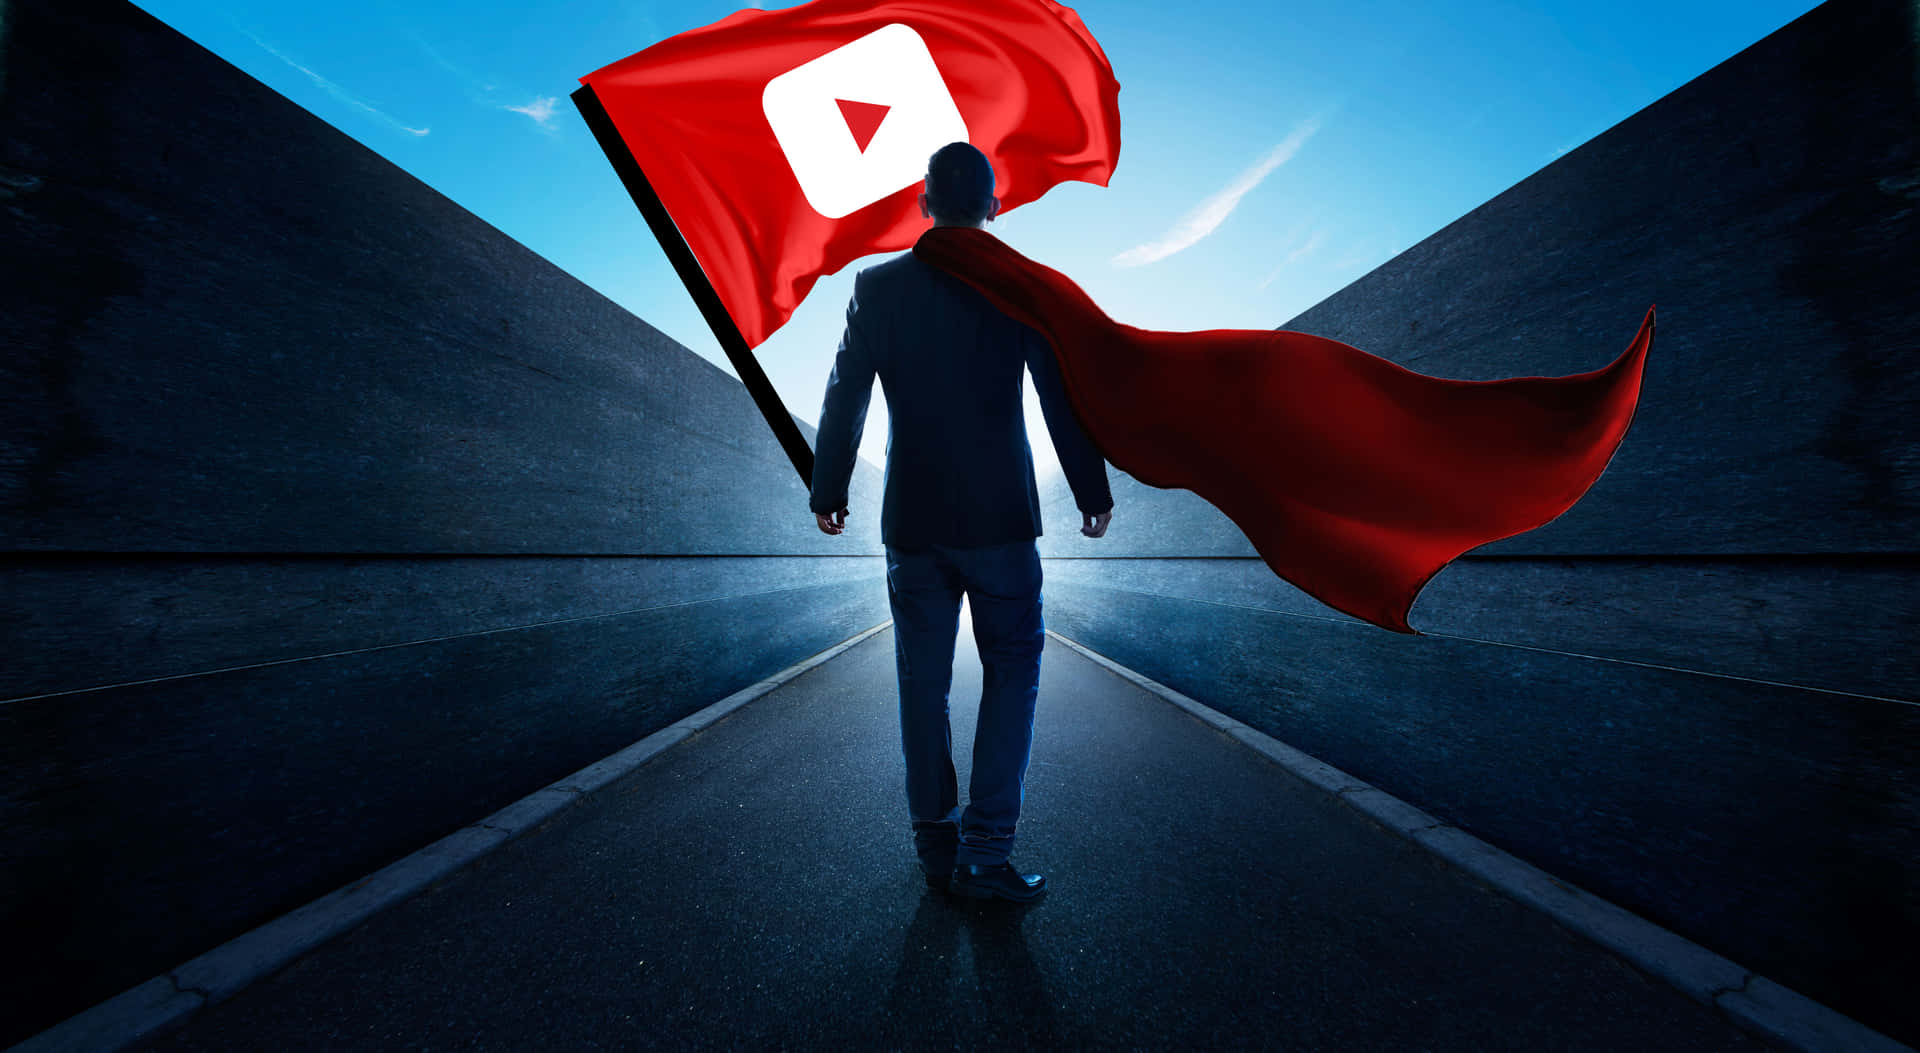 Logotipode Youtube Negro Sobre Fondo Oscuro.